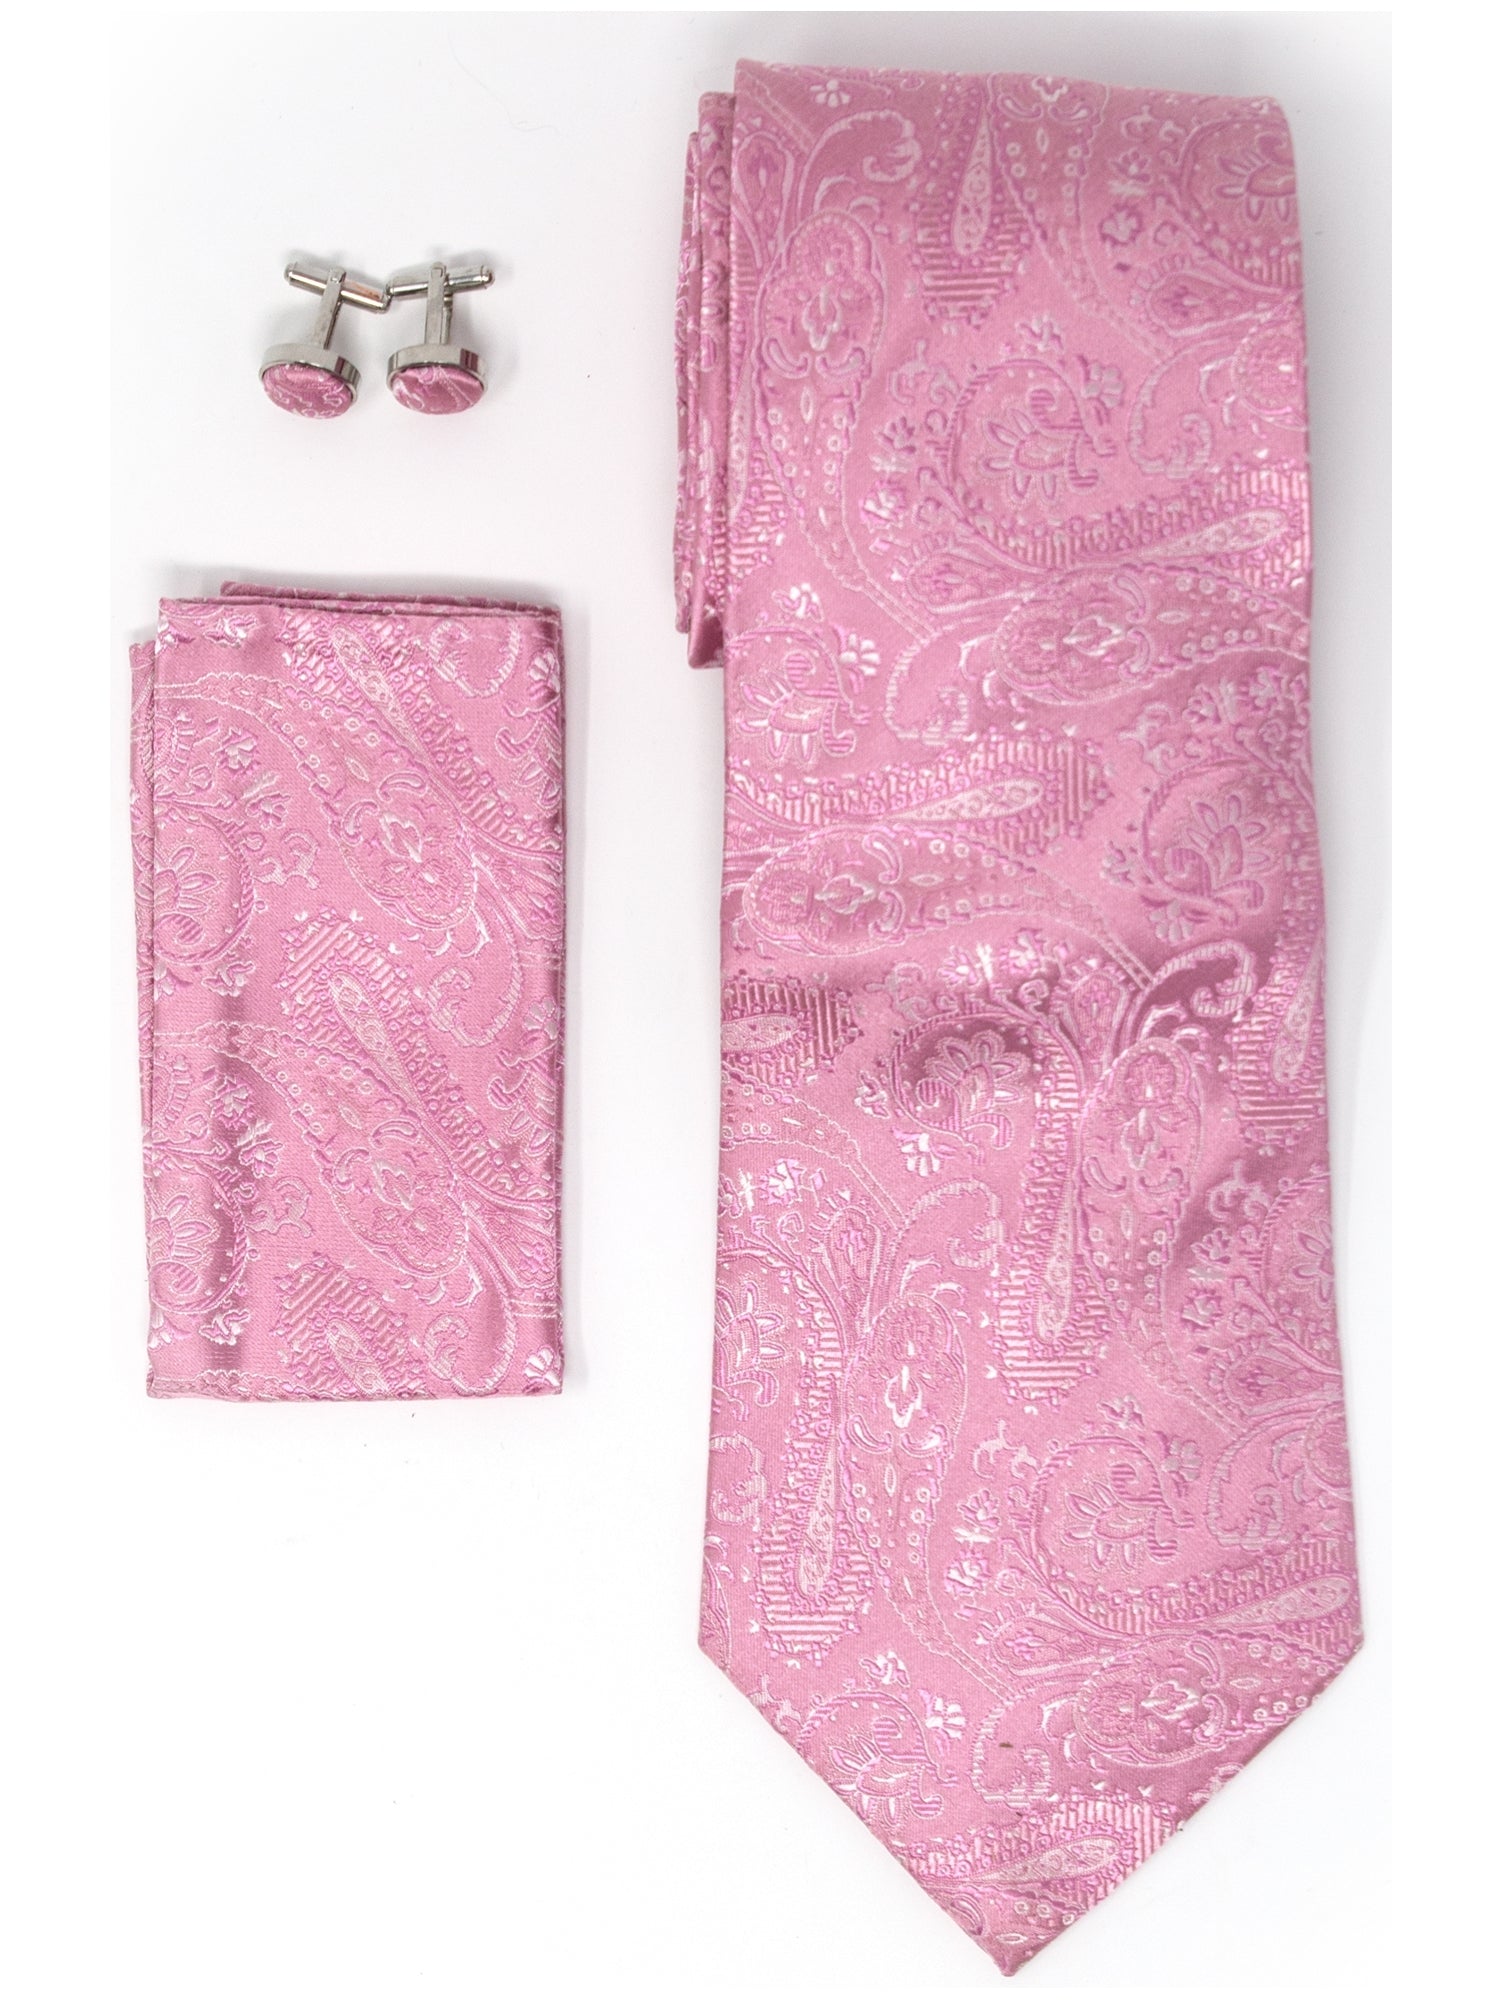 Men's Silk Neck Tie Set Cufflinks & Hanky Collection Neck Tie TheDapperTie Pink Paisley Regular 